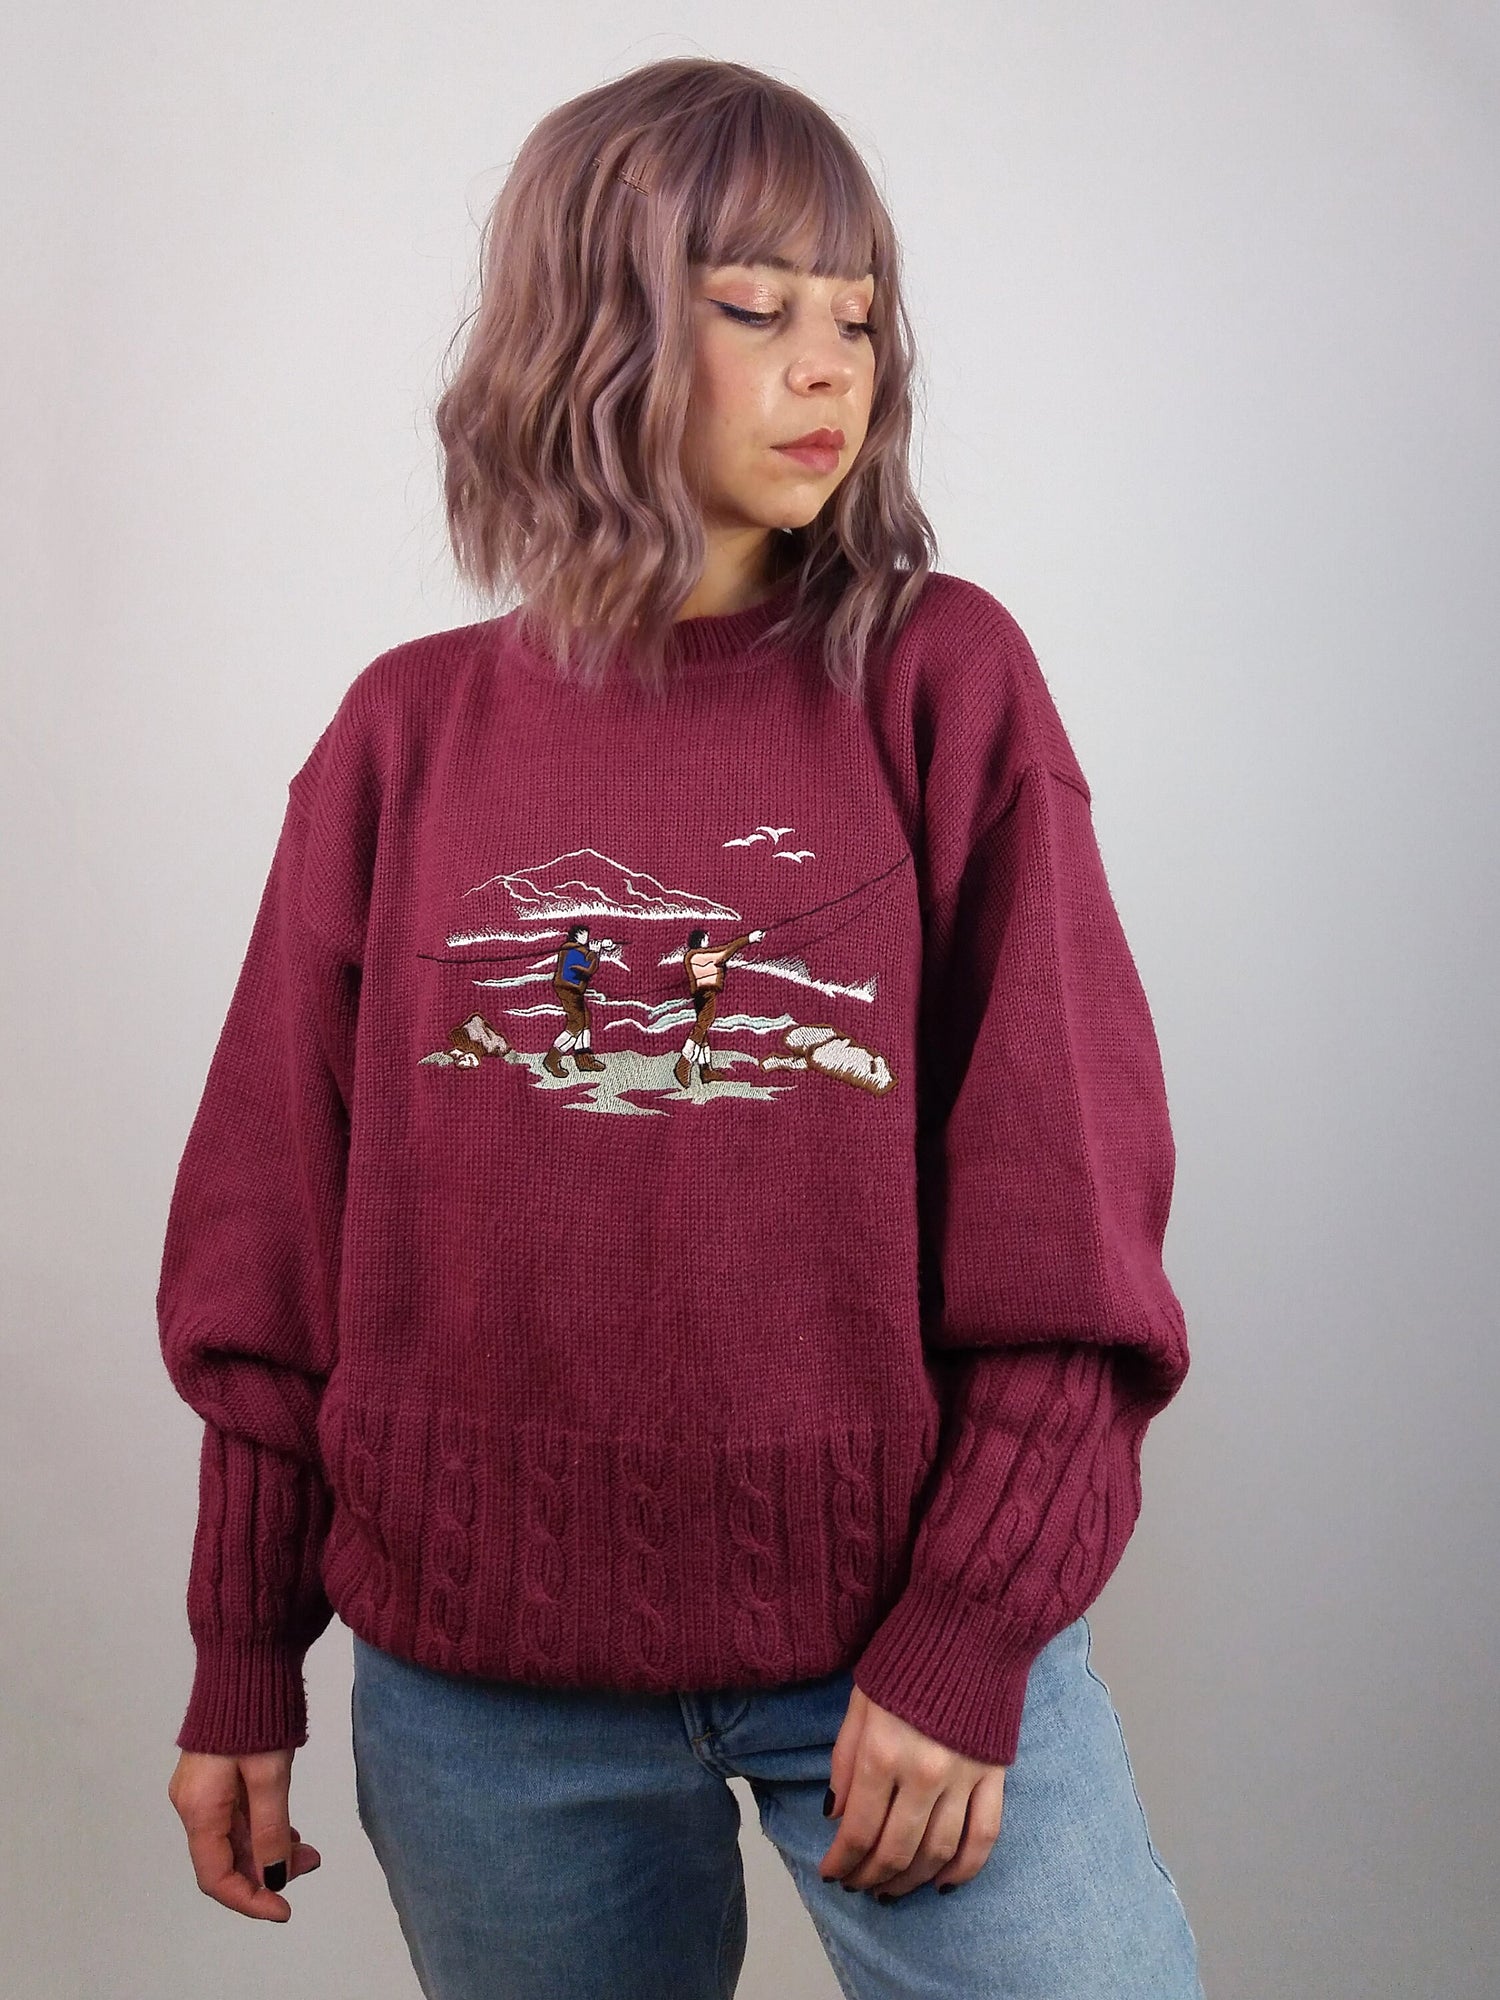 TONIO RIZZI Unisex Retro Novelty Sweater - size L – SarraMurra